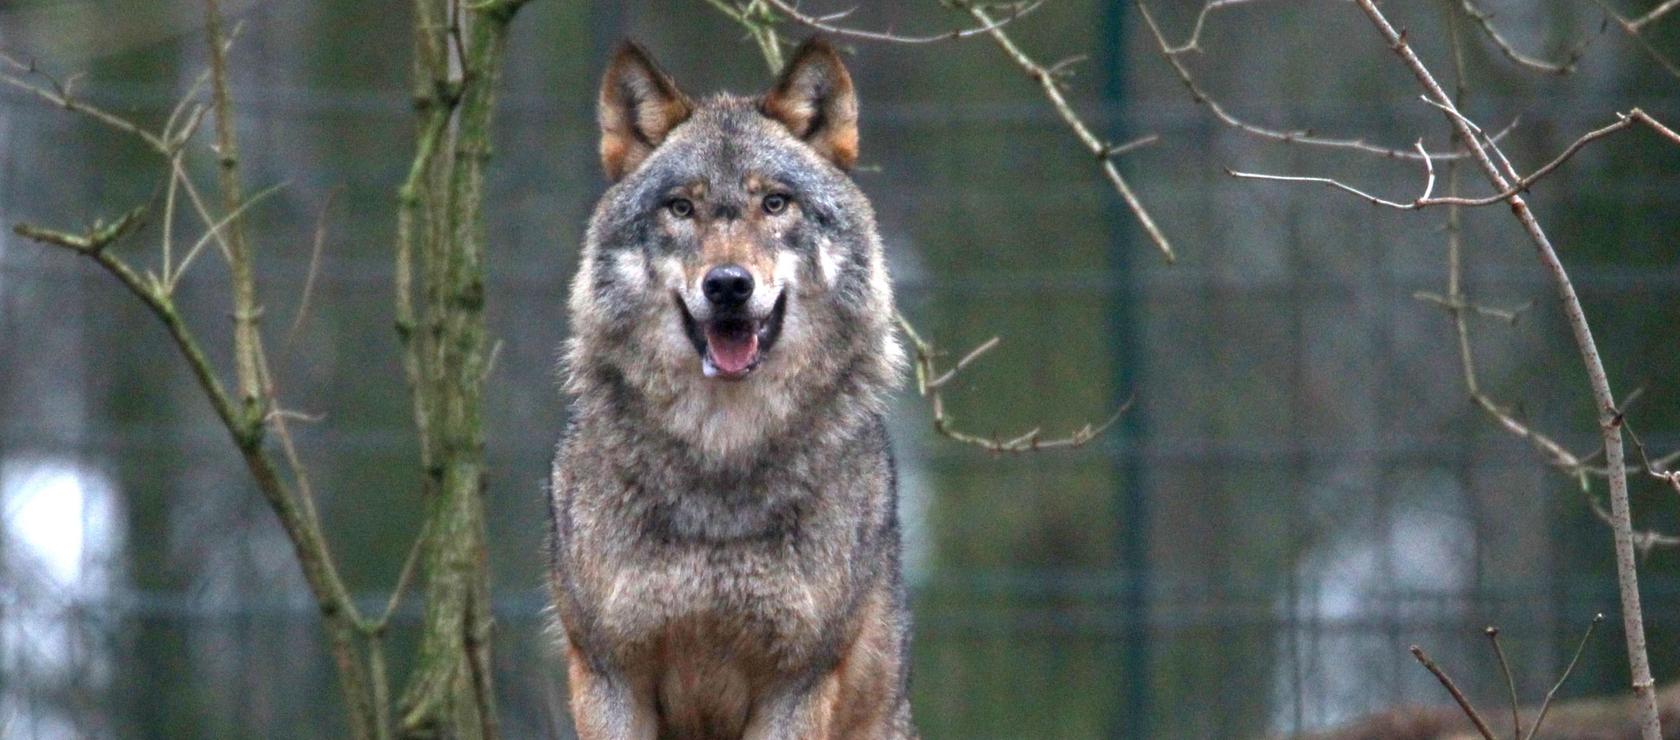 Der zu den Wölfen klettert: Polizei rettet Betrunkenen im Zoo